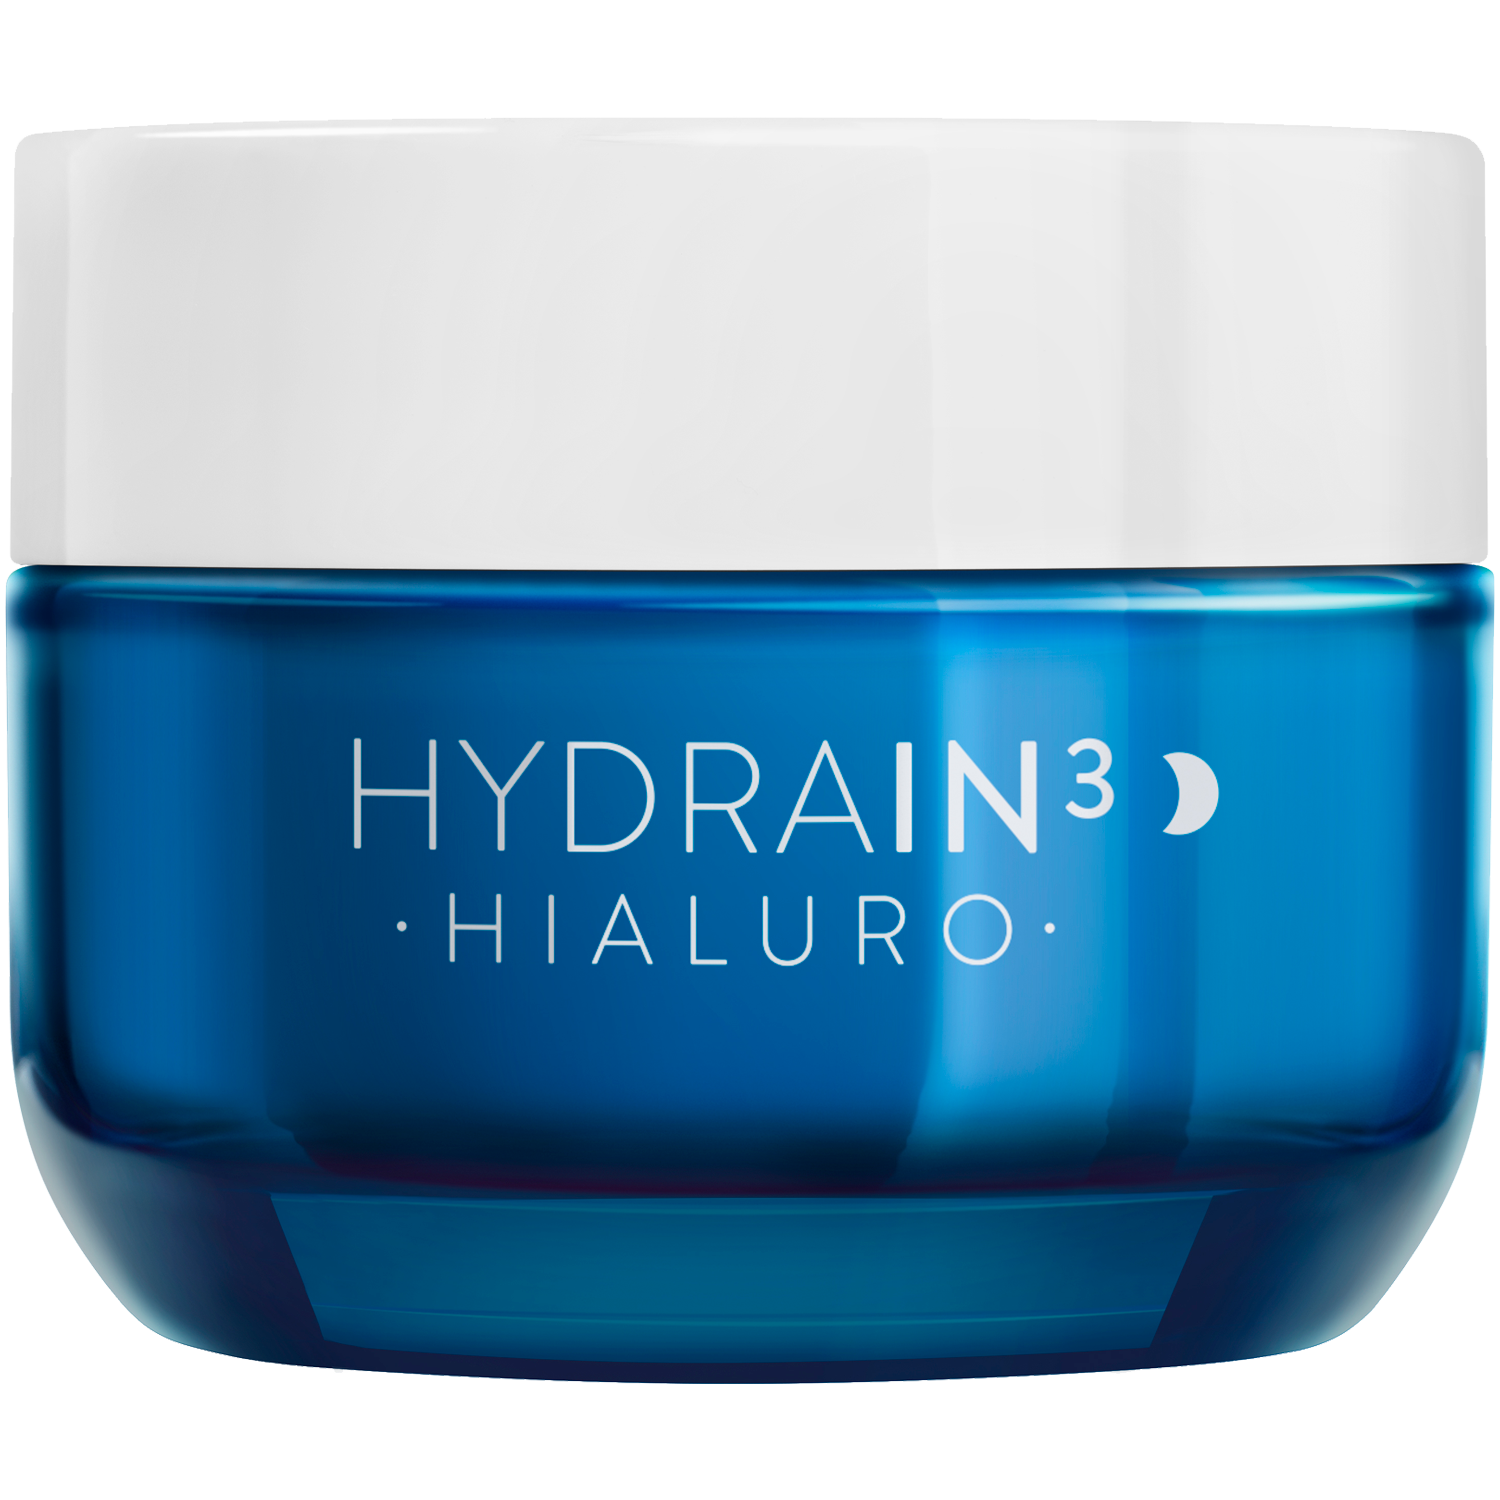 Dermedic Hydrain3 Hialuro крем для лица на ночь, 50 мл dermedic hydrain3 hialuro крем для лица на ночь 50 ml